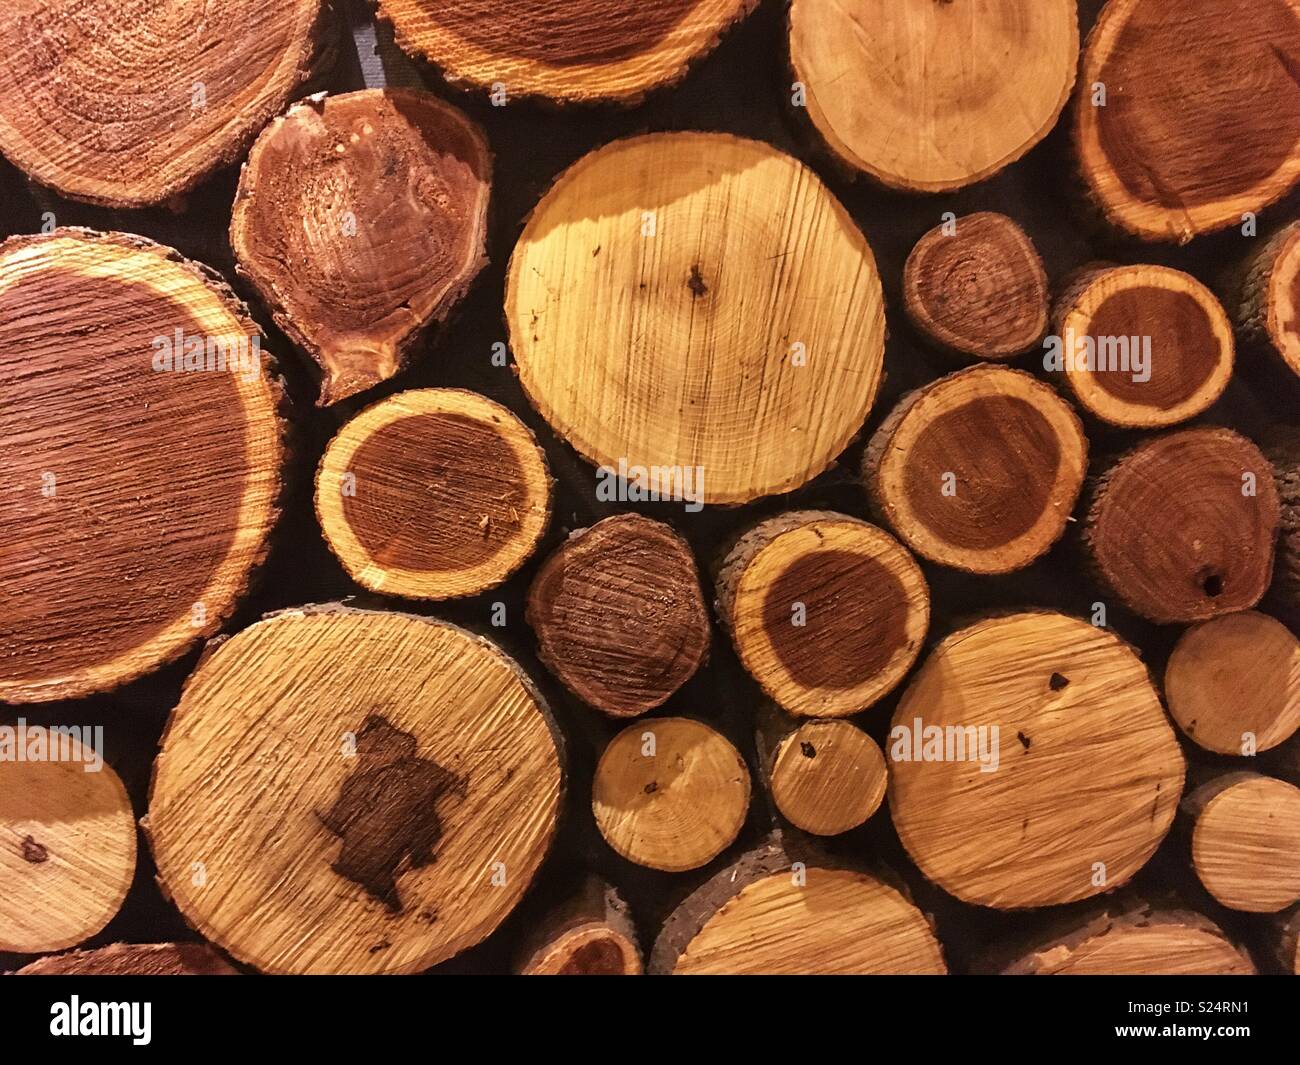 sawn logs Stock Photo